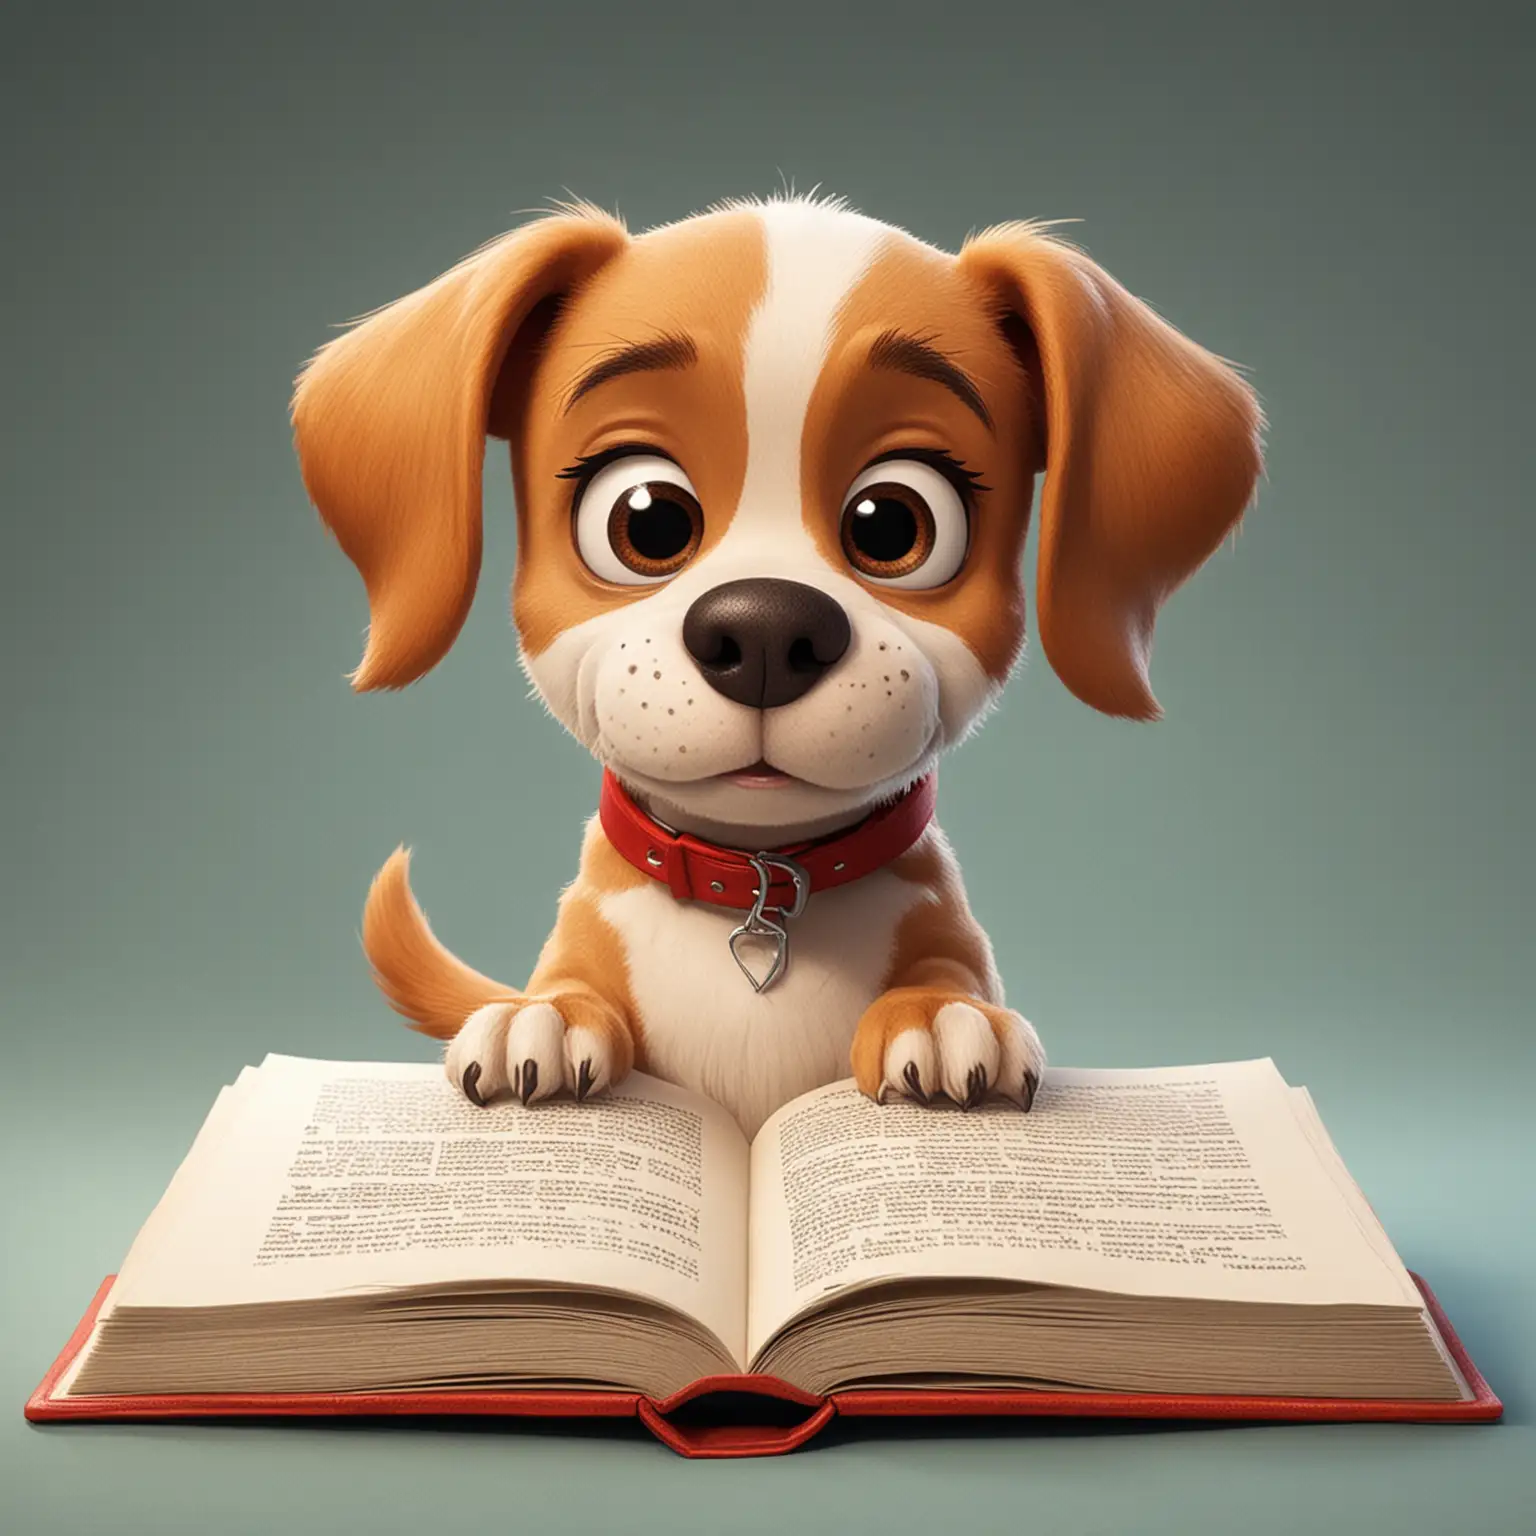 Curious-Cartoon-Dog-Reading-a-Book